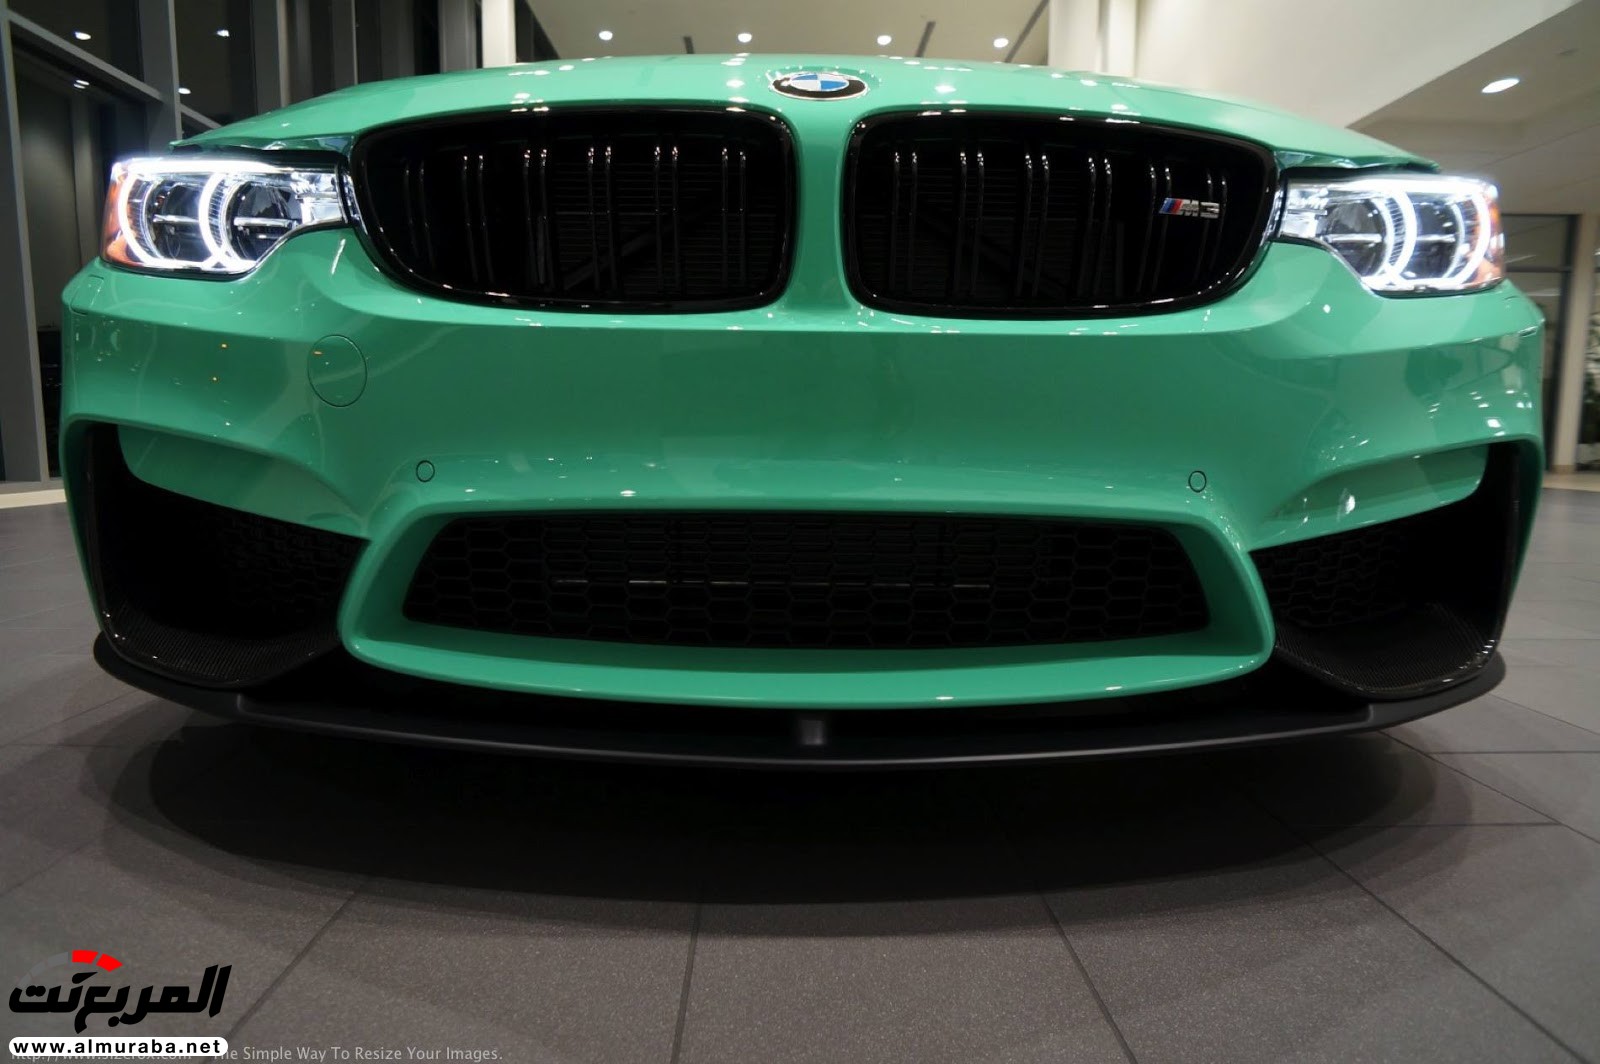 "بالصور" شاهد "بي إم دبليو" F80 M3 الخاصة بطلاء النعناع الأخضر BMW 115